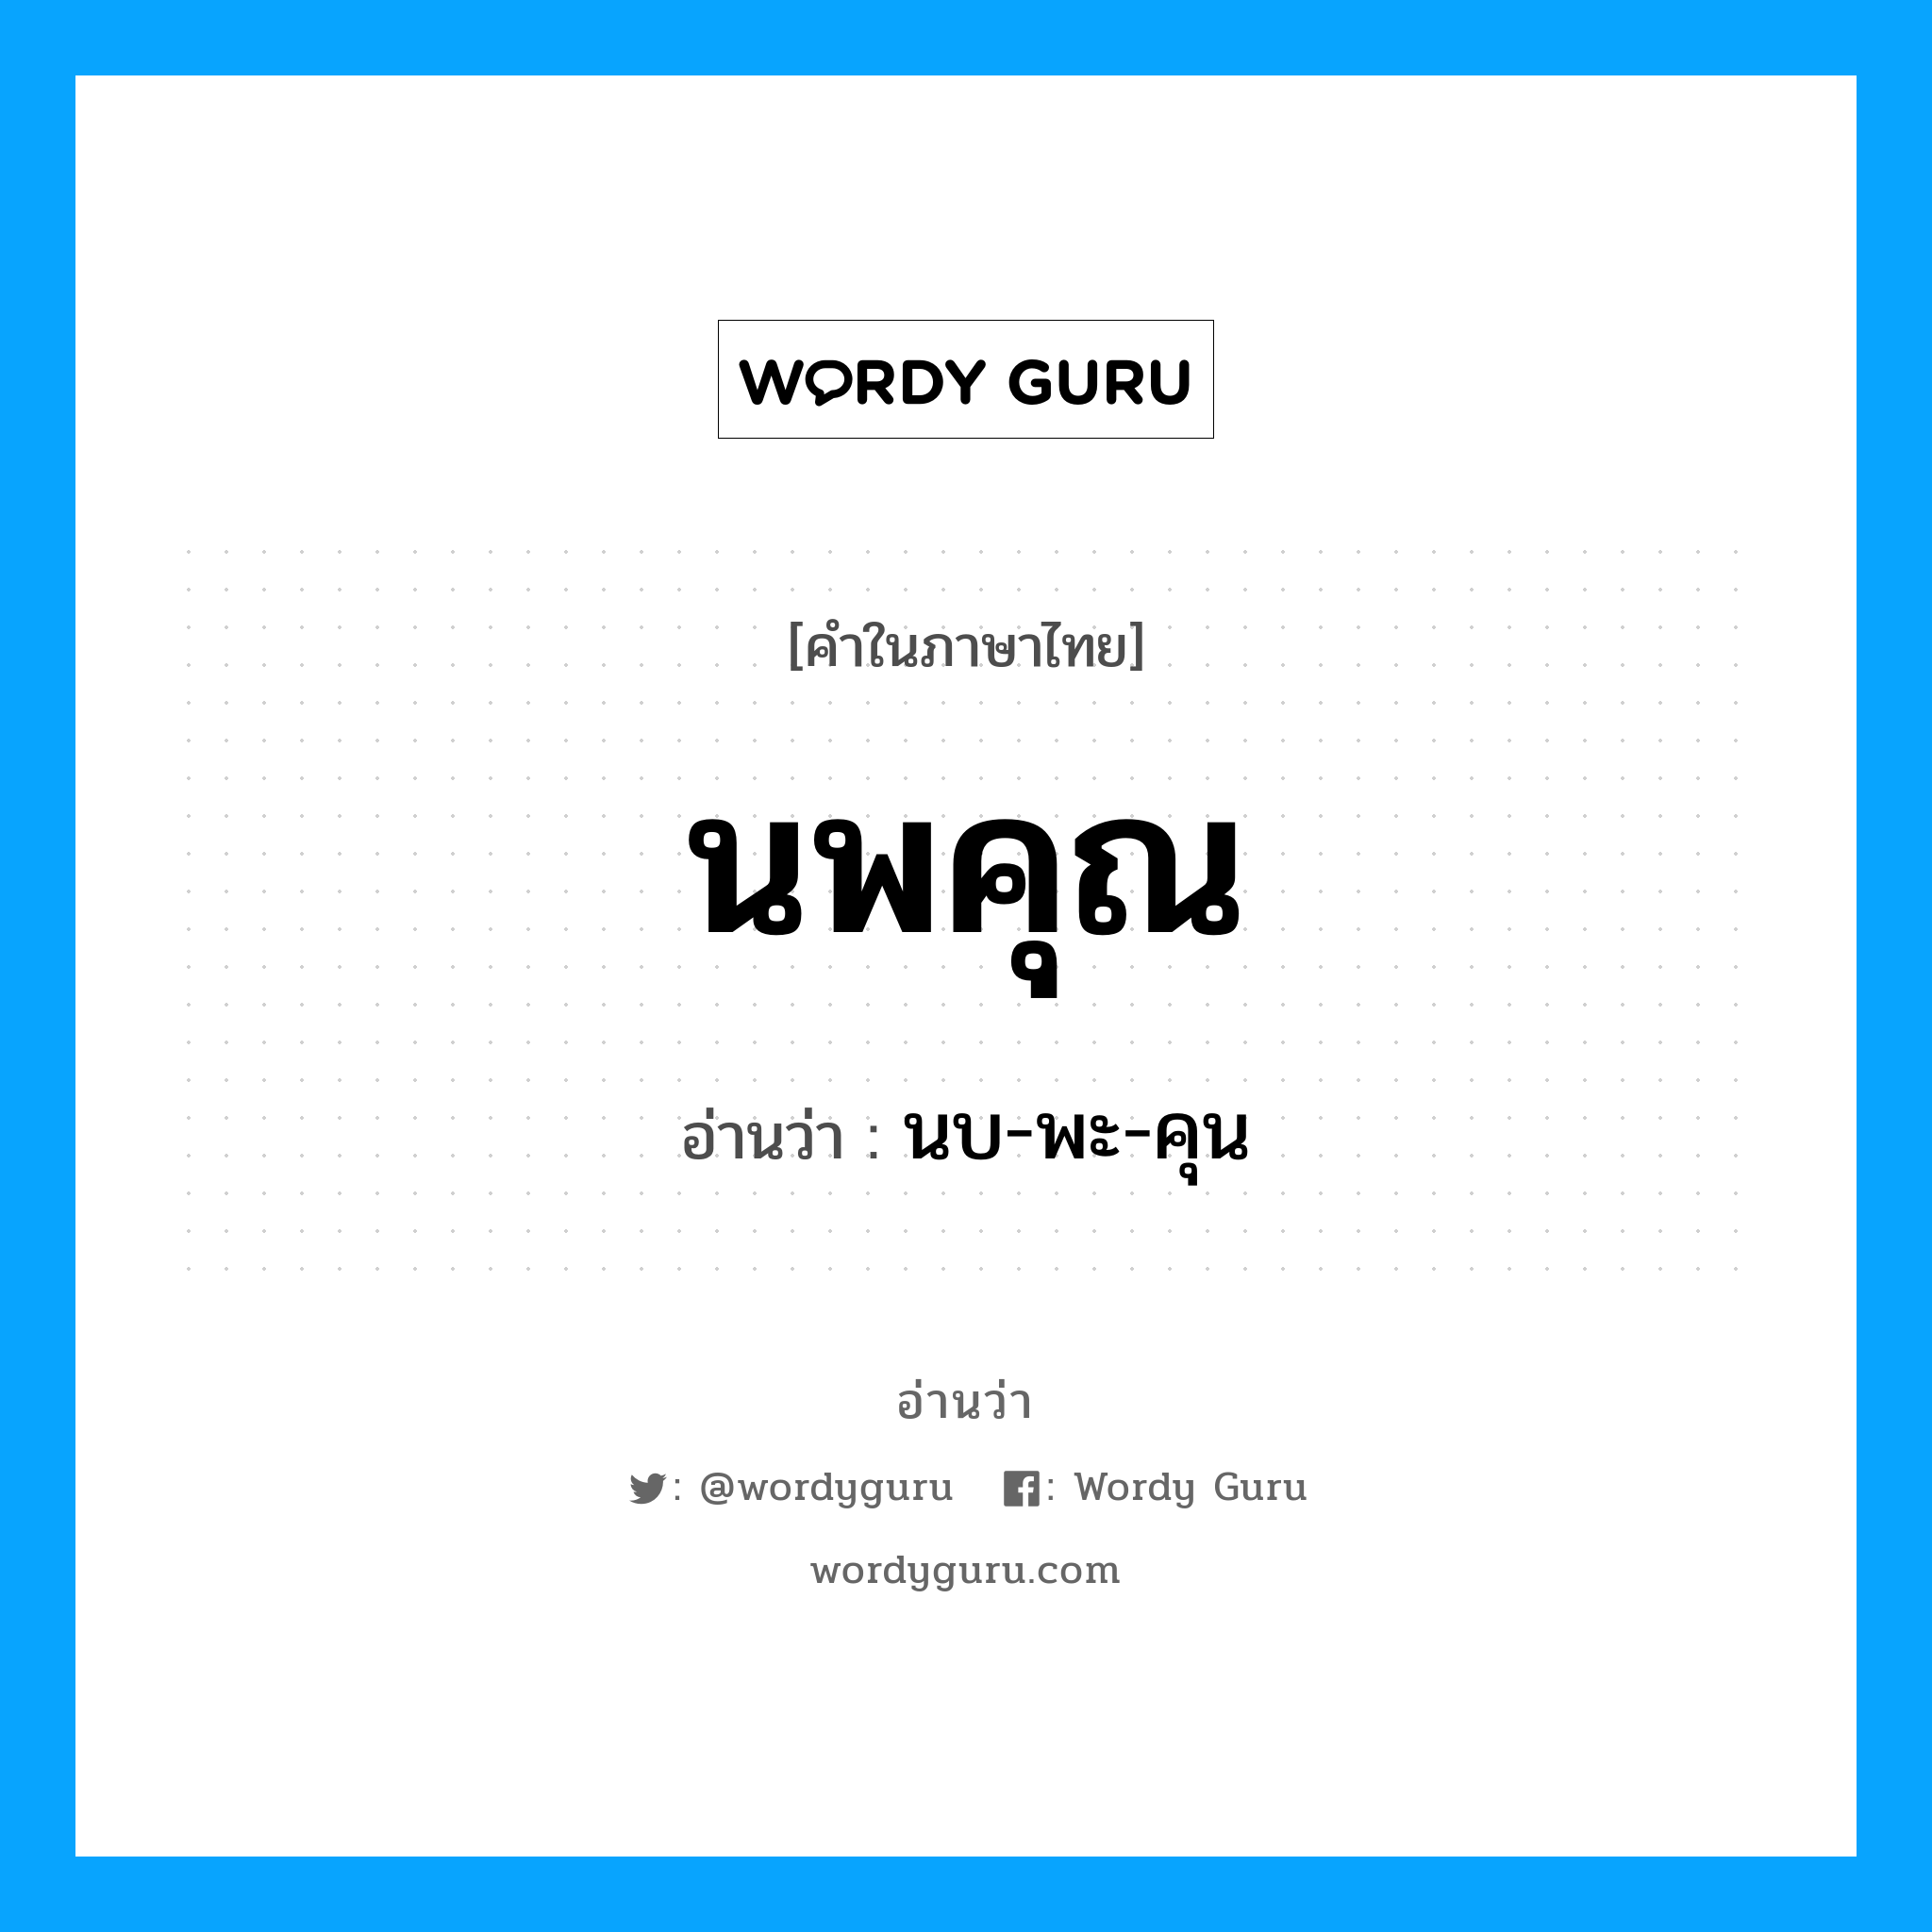 นบ-พะ-คุน เป็นคำอ่านของคำไหน?, คำในภาษาไทย นบ-พะ-คุน อ่านว่า นพคุณ